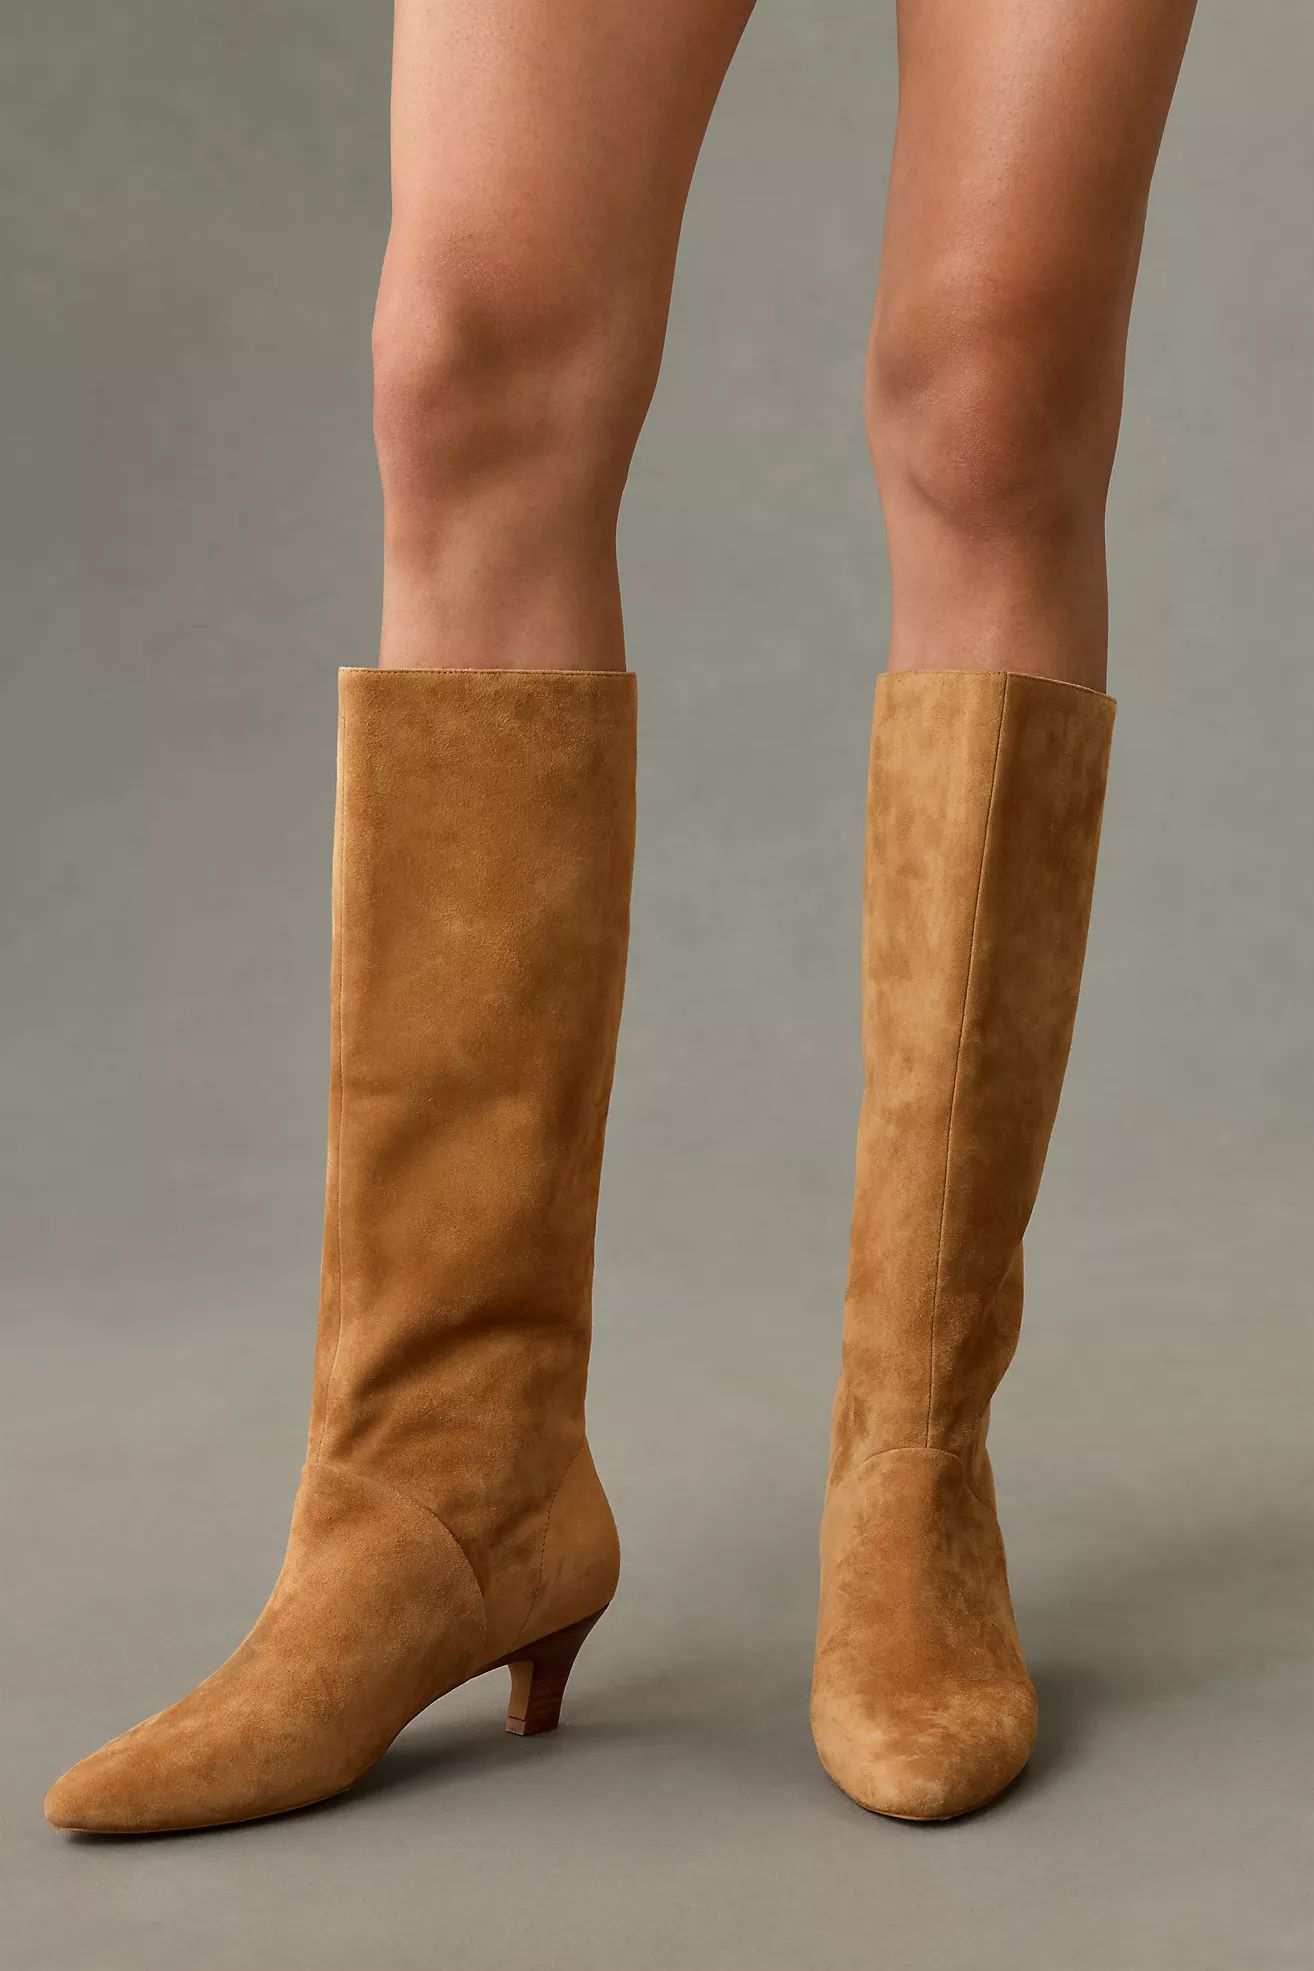 Silent D Erena Kitten-Heel Boots | Anthropologie (US)